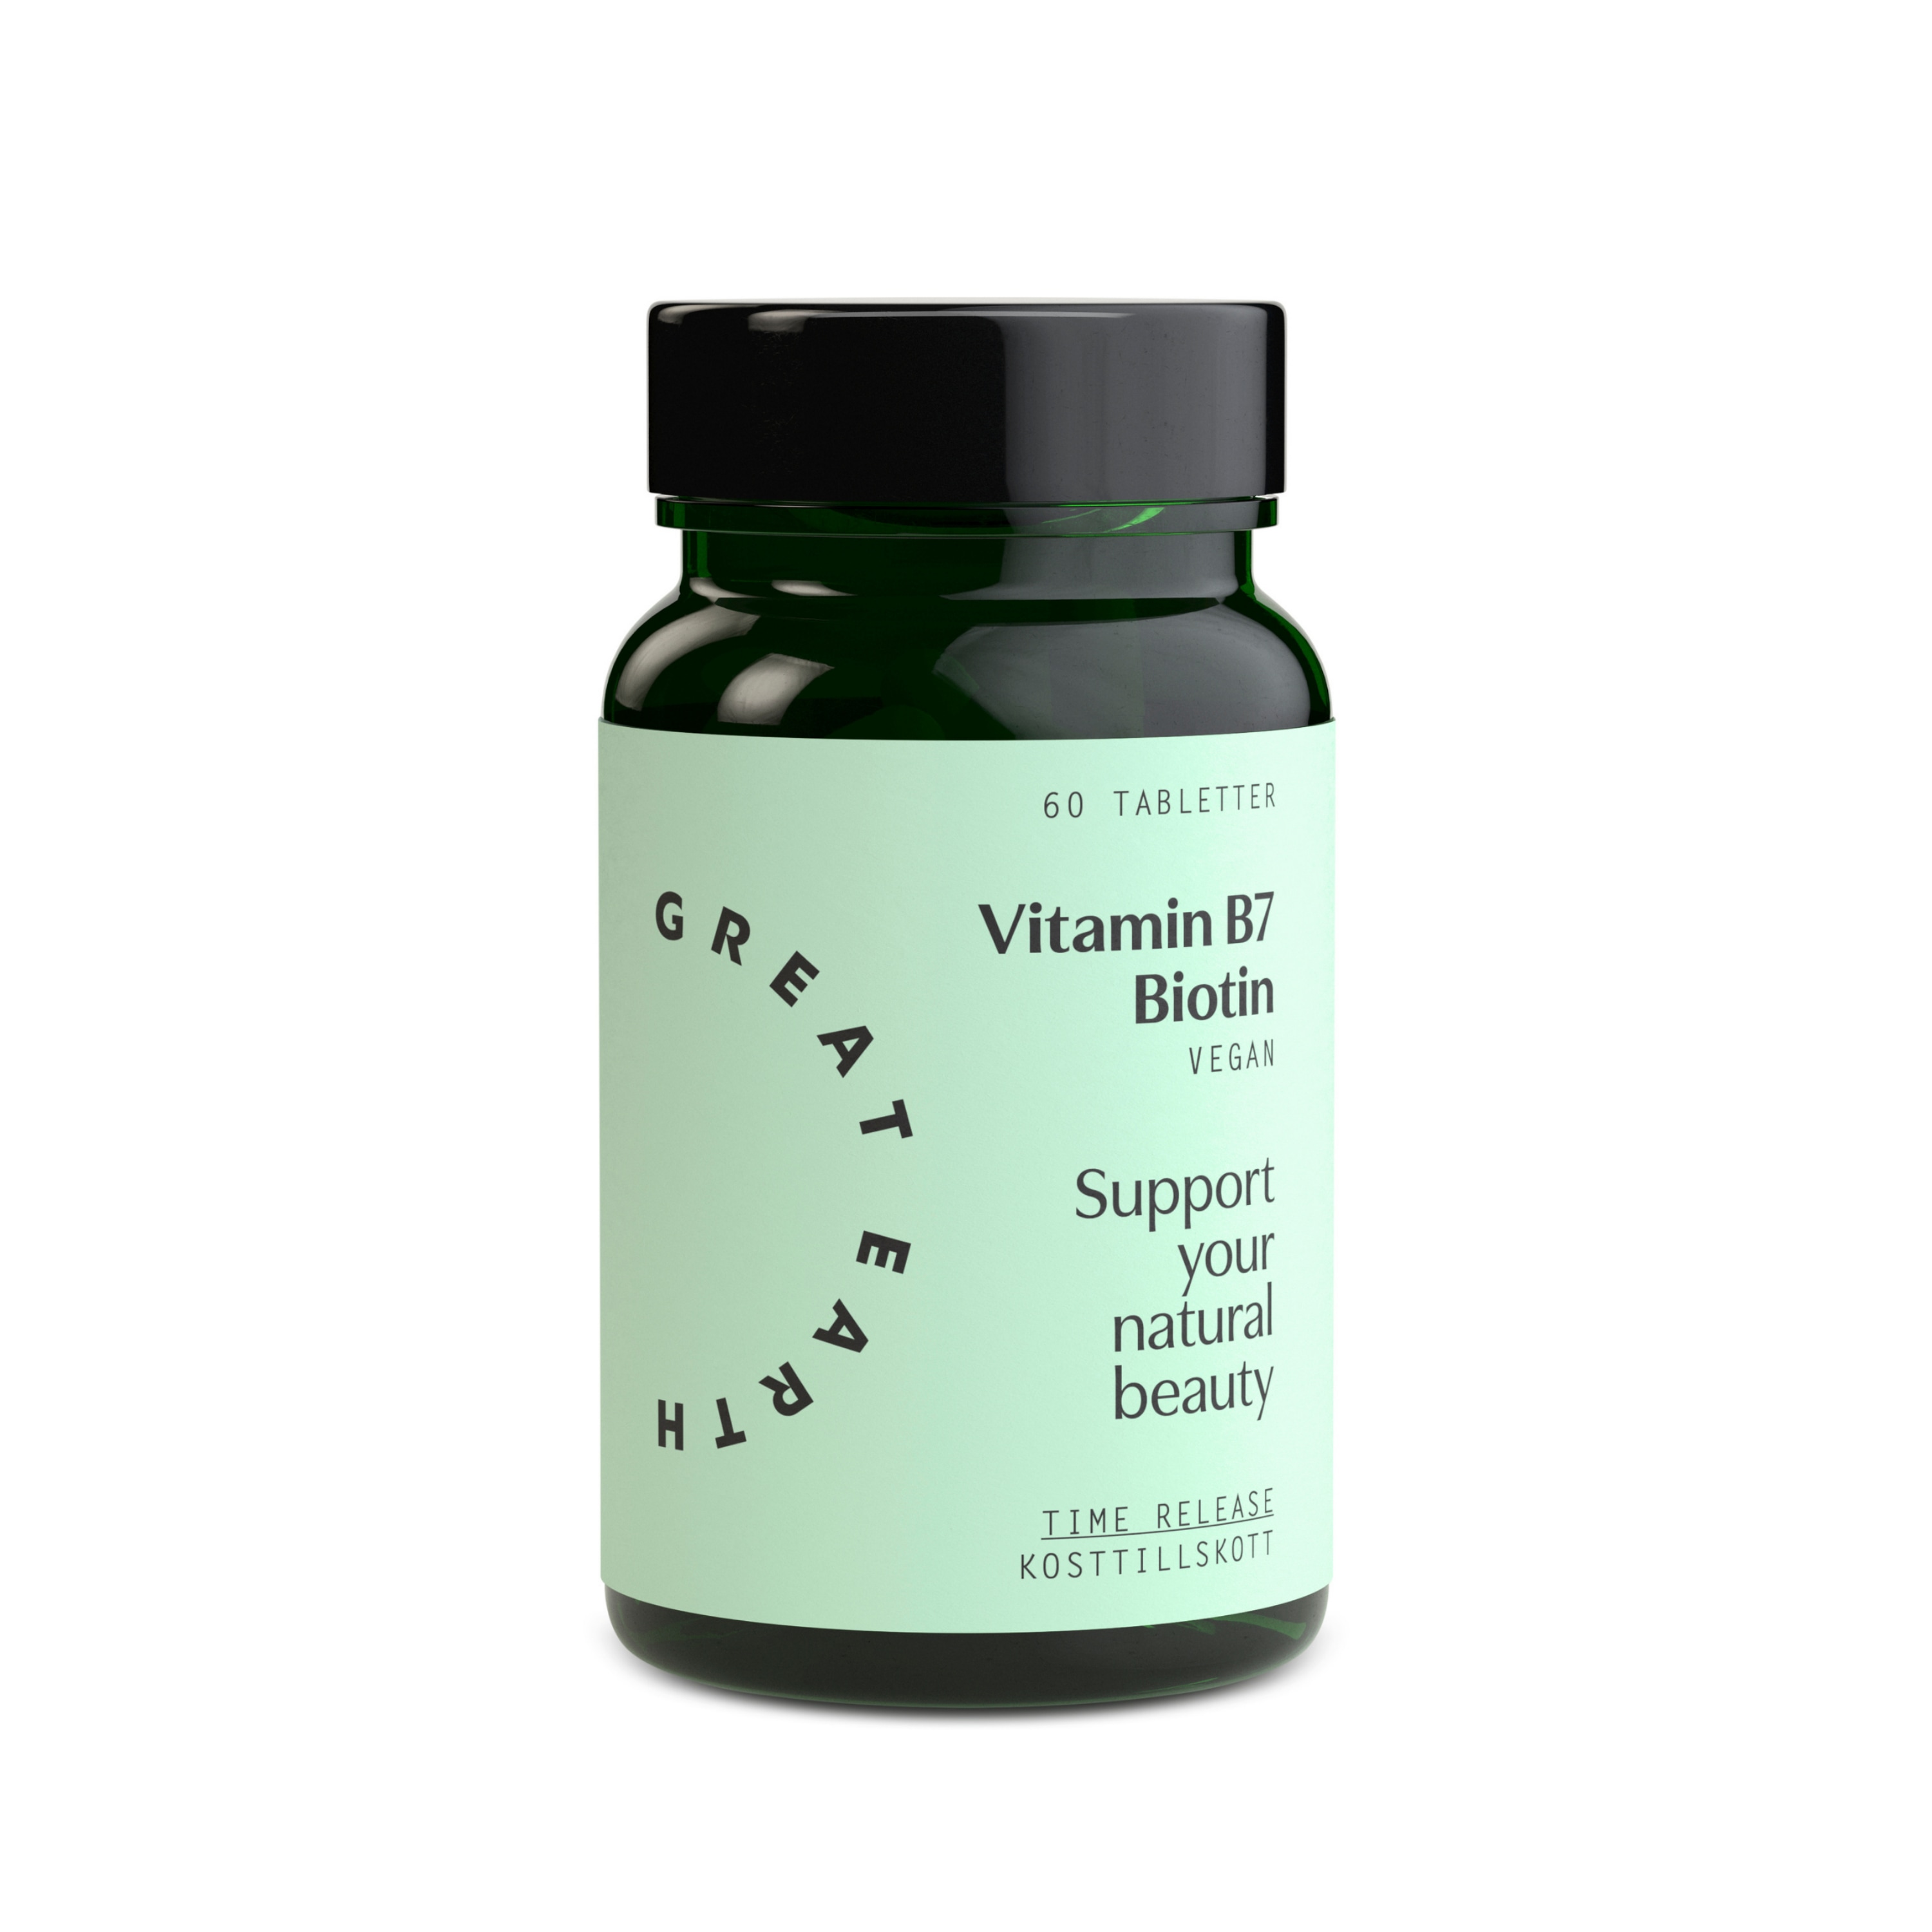 Vitamin B7 Biotin 60t